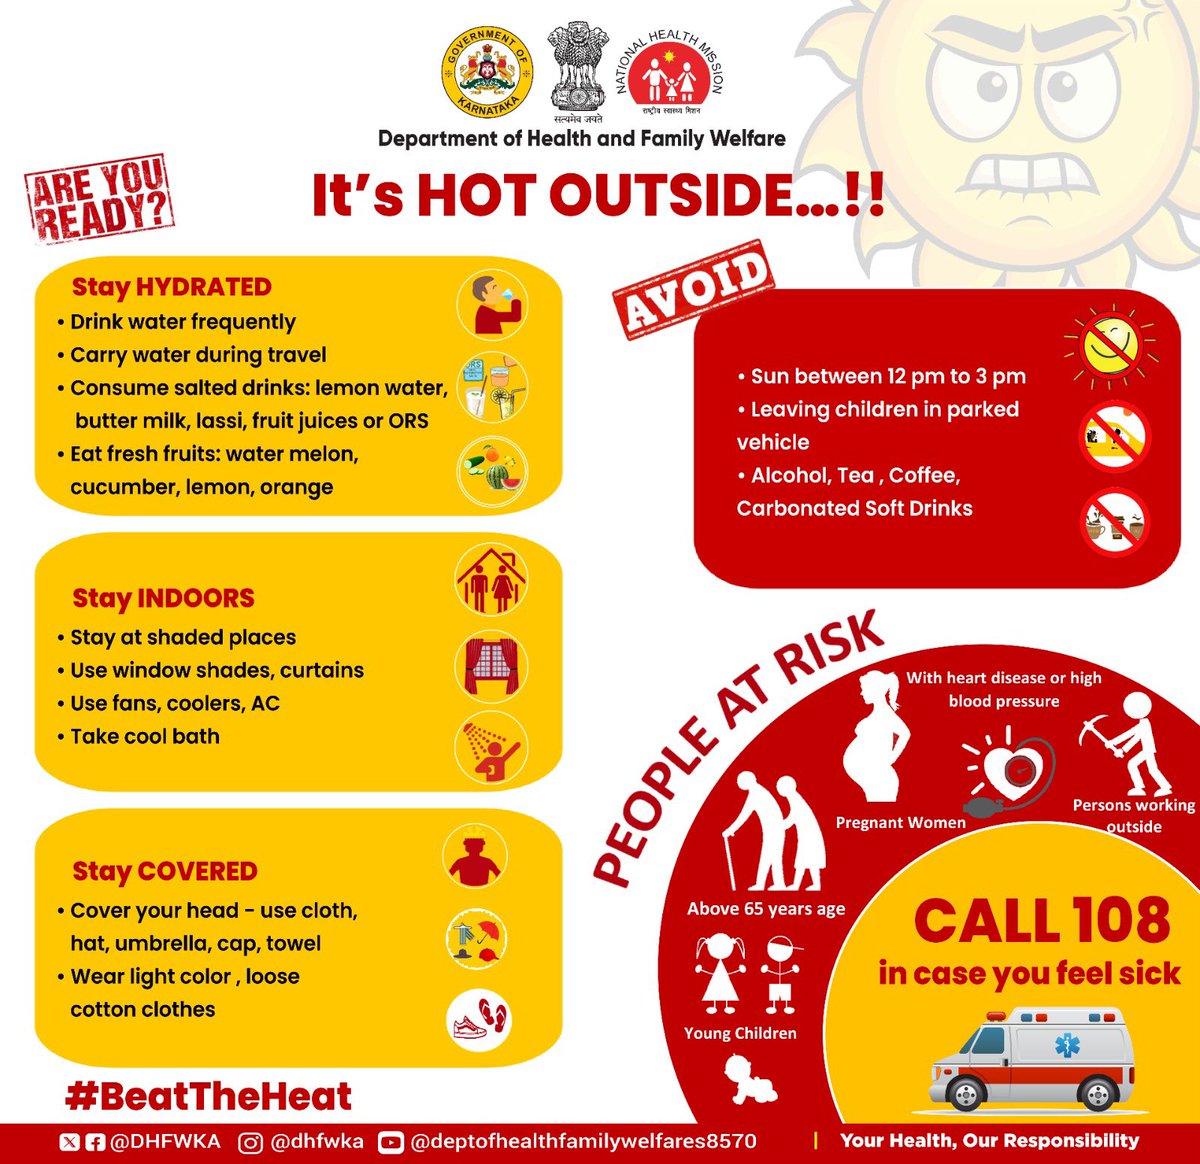 ಶಾಖಾಘಾತ (#Heatwave)ನಿಂದ ರಕ್ಷಿಸಿಕೊಳ್ಳಲು ಈ ಮುನ್ನೆಚ್ಚರಿಕೆ ಕ್ರಮಗಳನ್ನು ಅನುಸರಿಸಿ! These precautionary measures will help you stay protected from the #HeatWave! Do's & Don't to #BeatTheHeat #Summer #StayHydrated